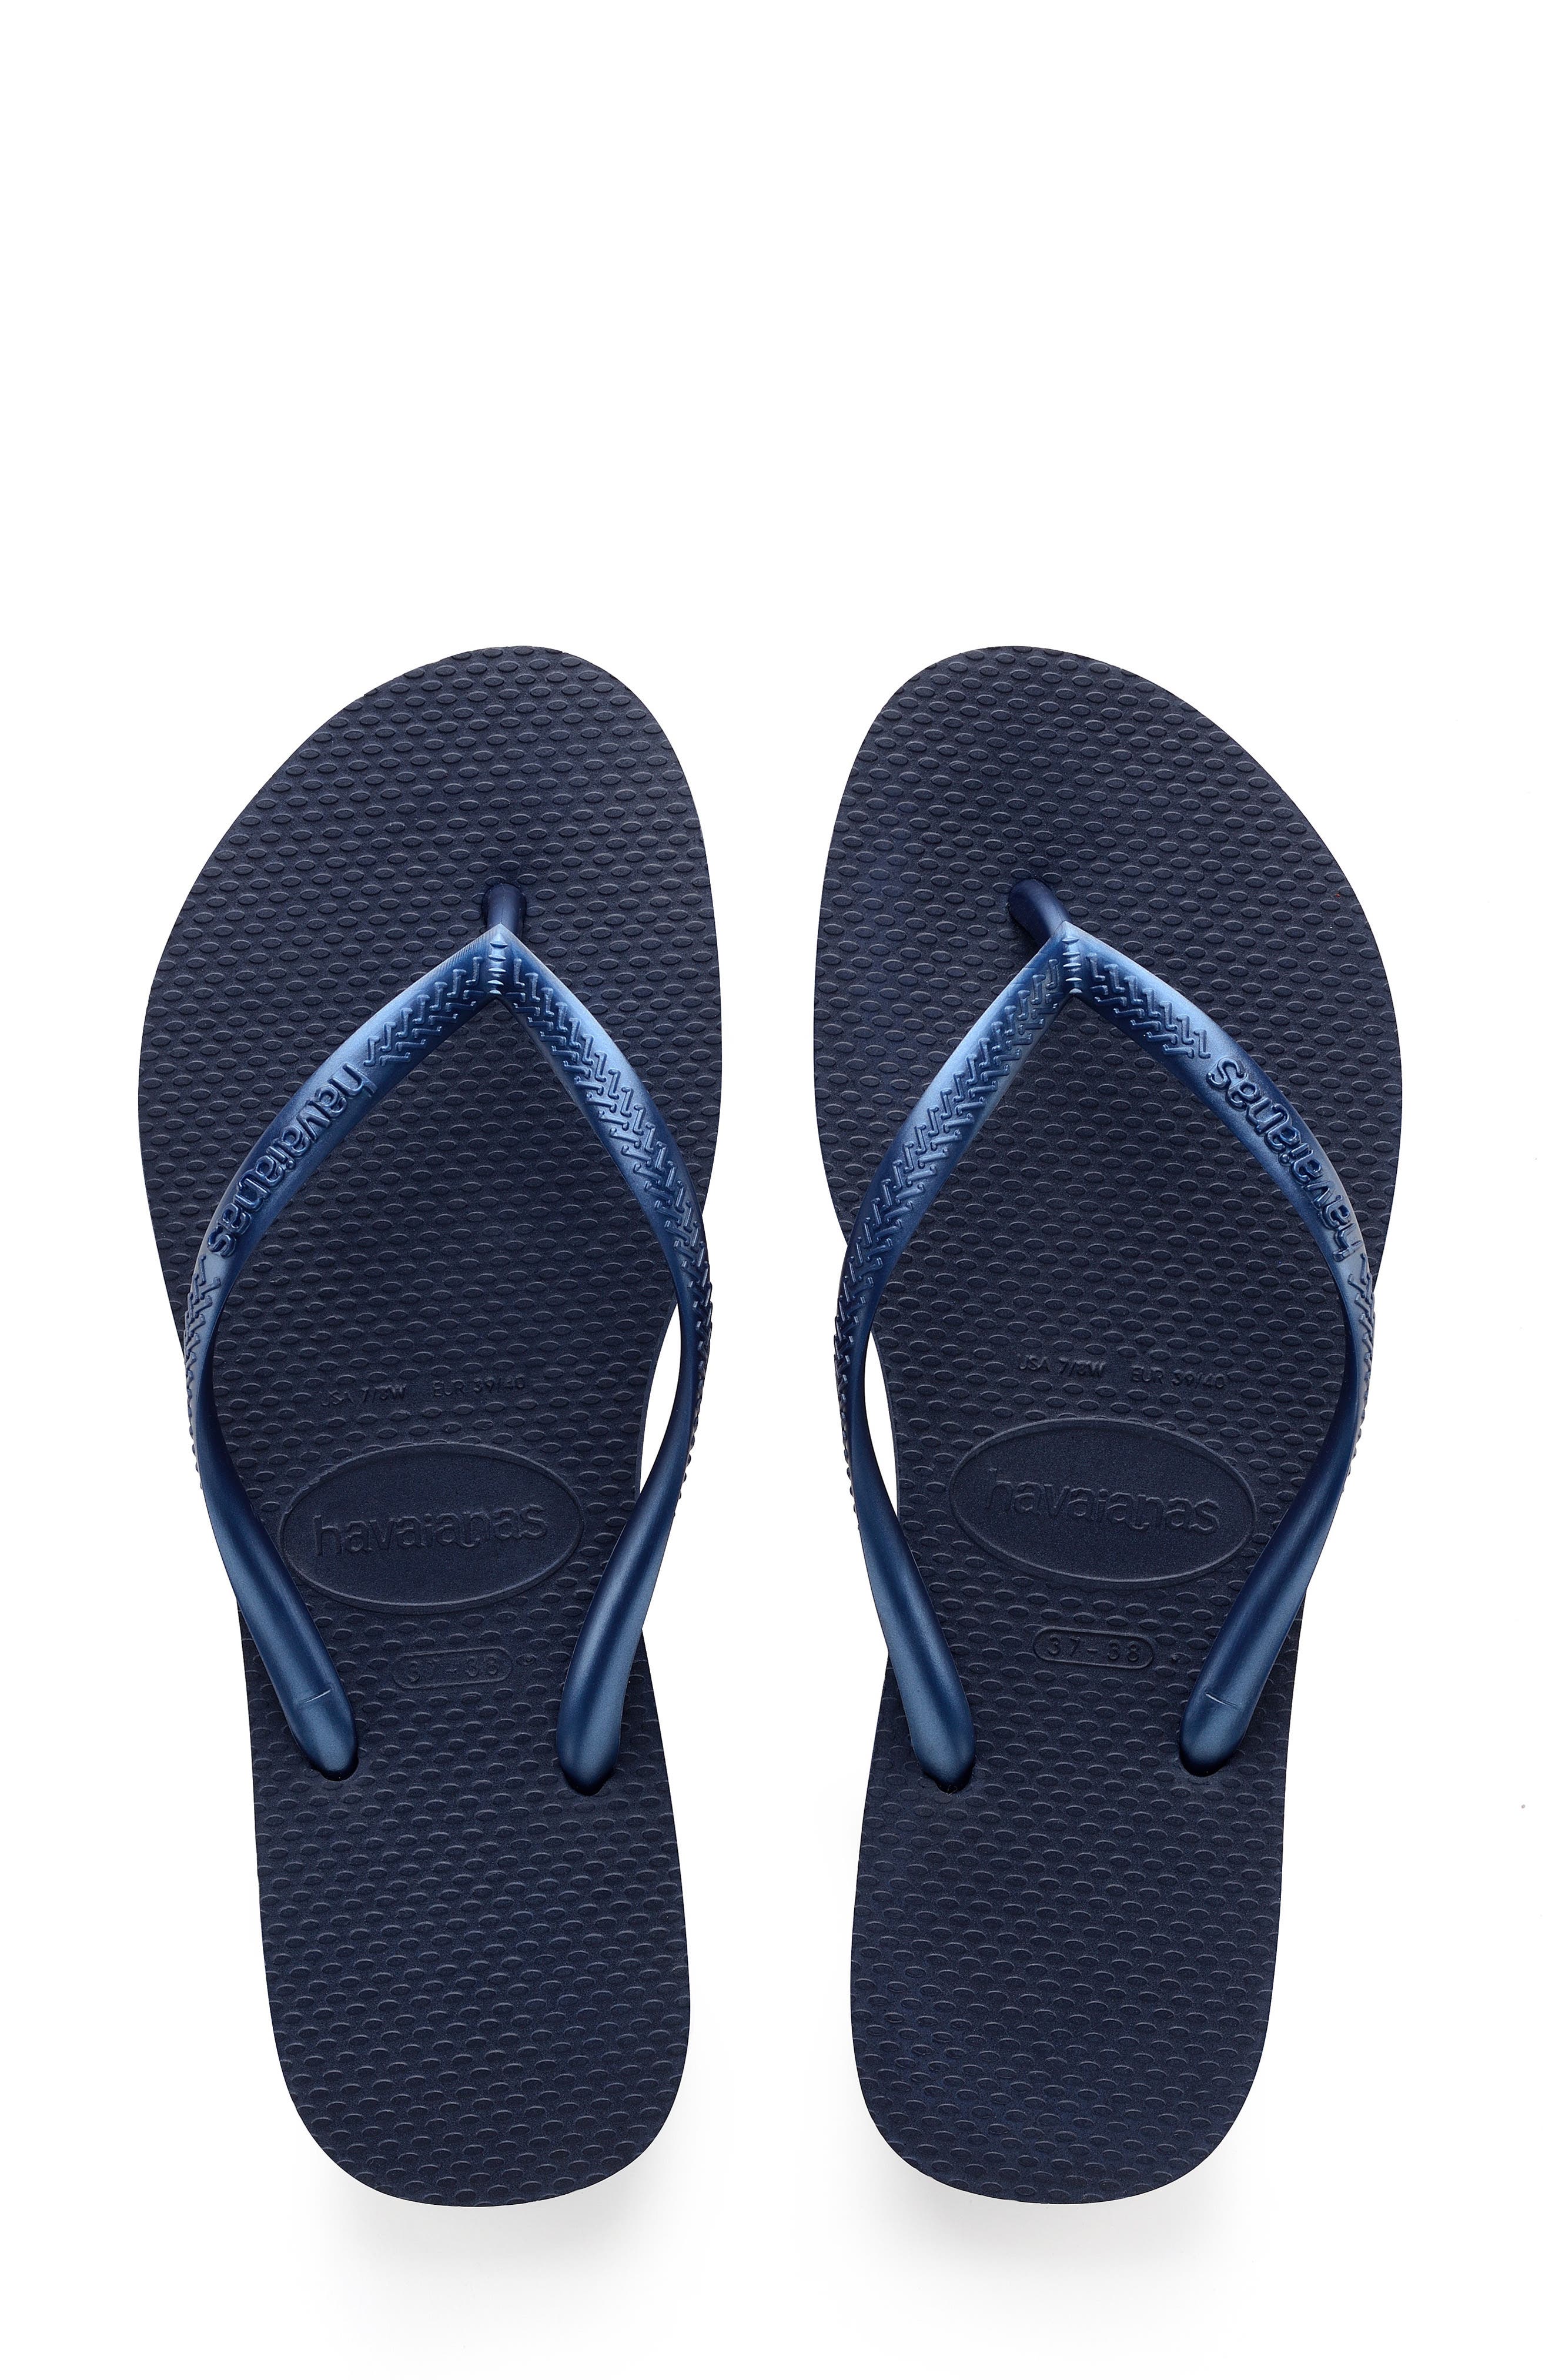 Womens Flip Flop Thong Flats Sandals Shoes Blue Glitter 